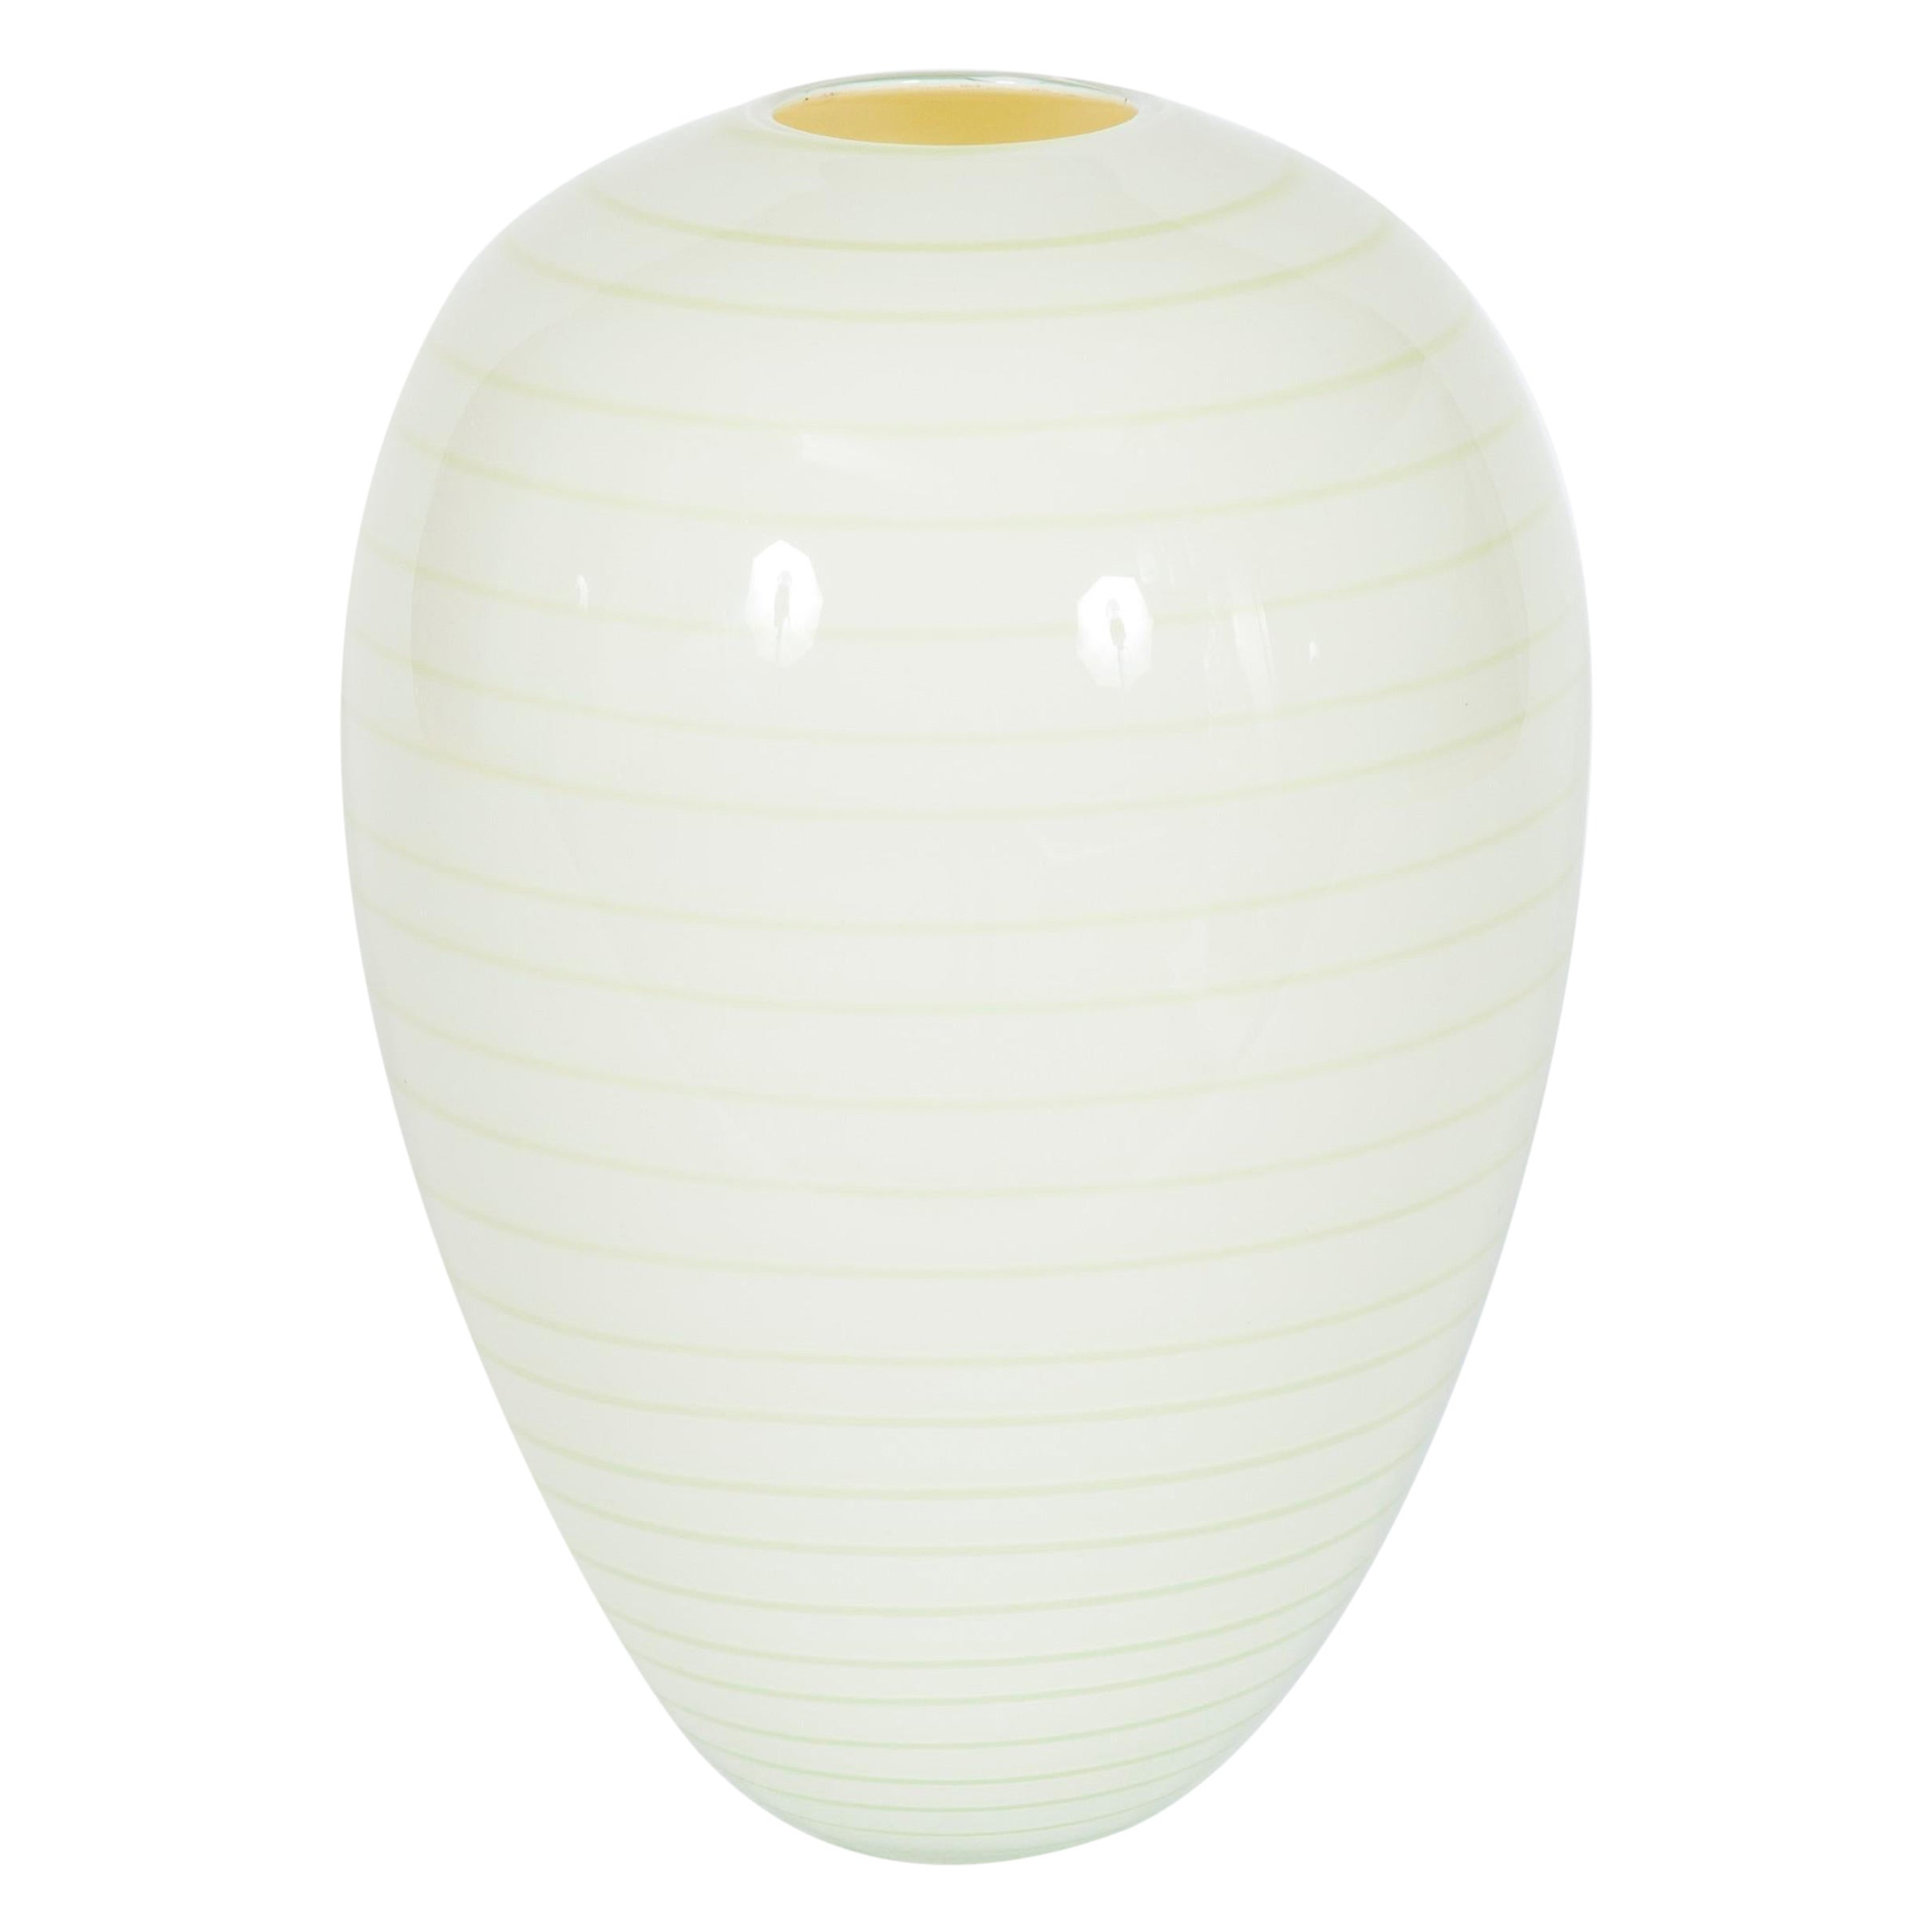 Artistic Ornament Vase in White Murano Glass Attributed to Seguso, 1960s